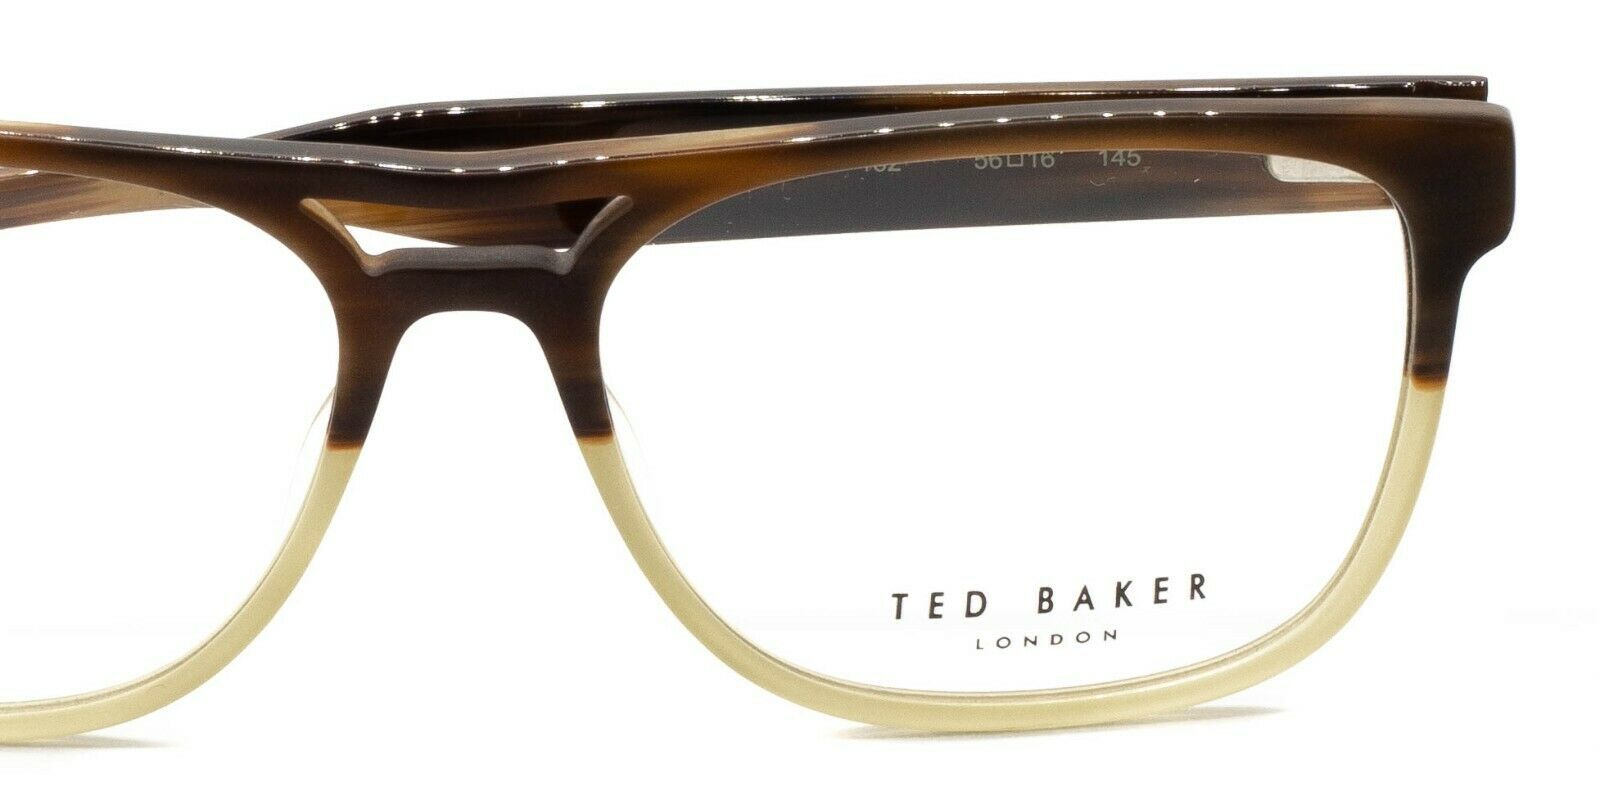 TED BAKER 8207 162 Holden 56mm Eyewear FRAMES Glasses Eyeglasses RX Optical New